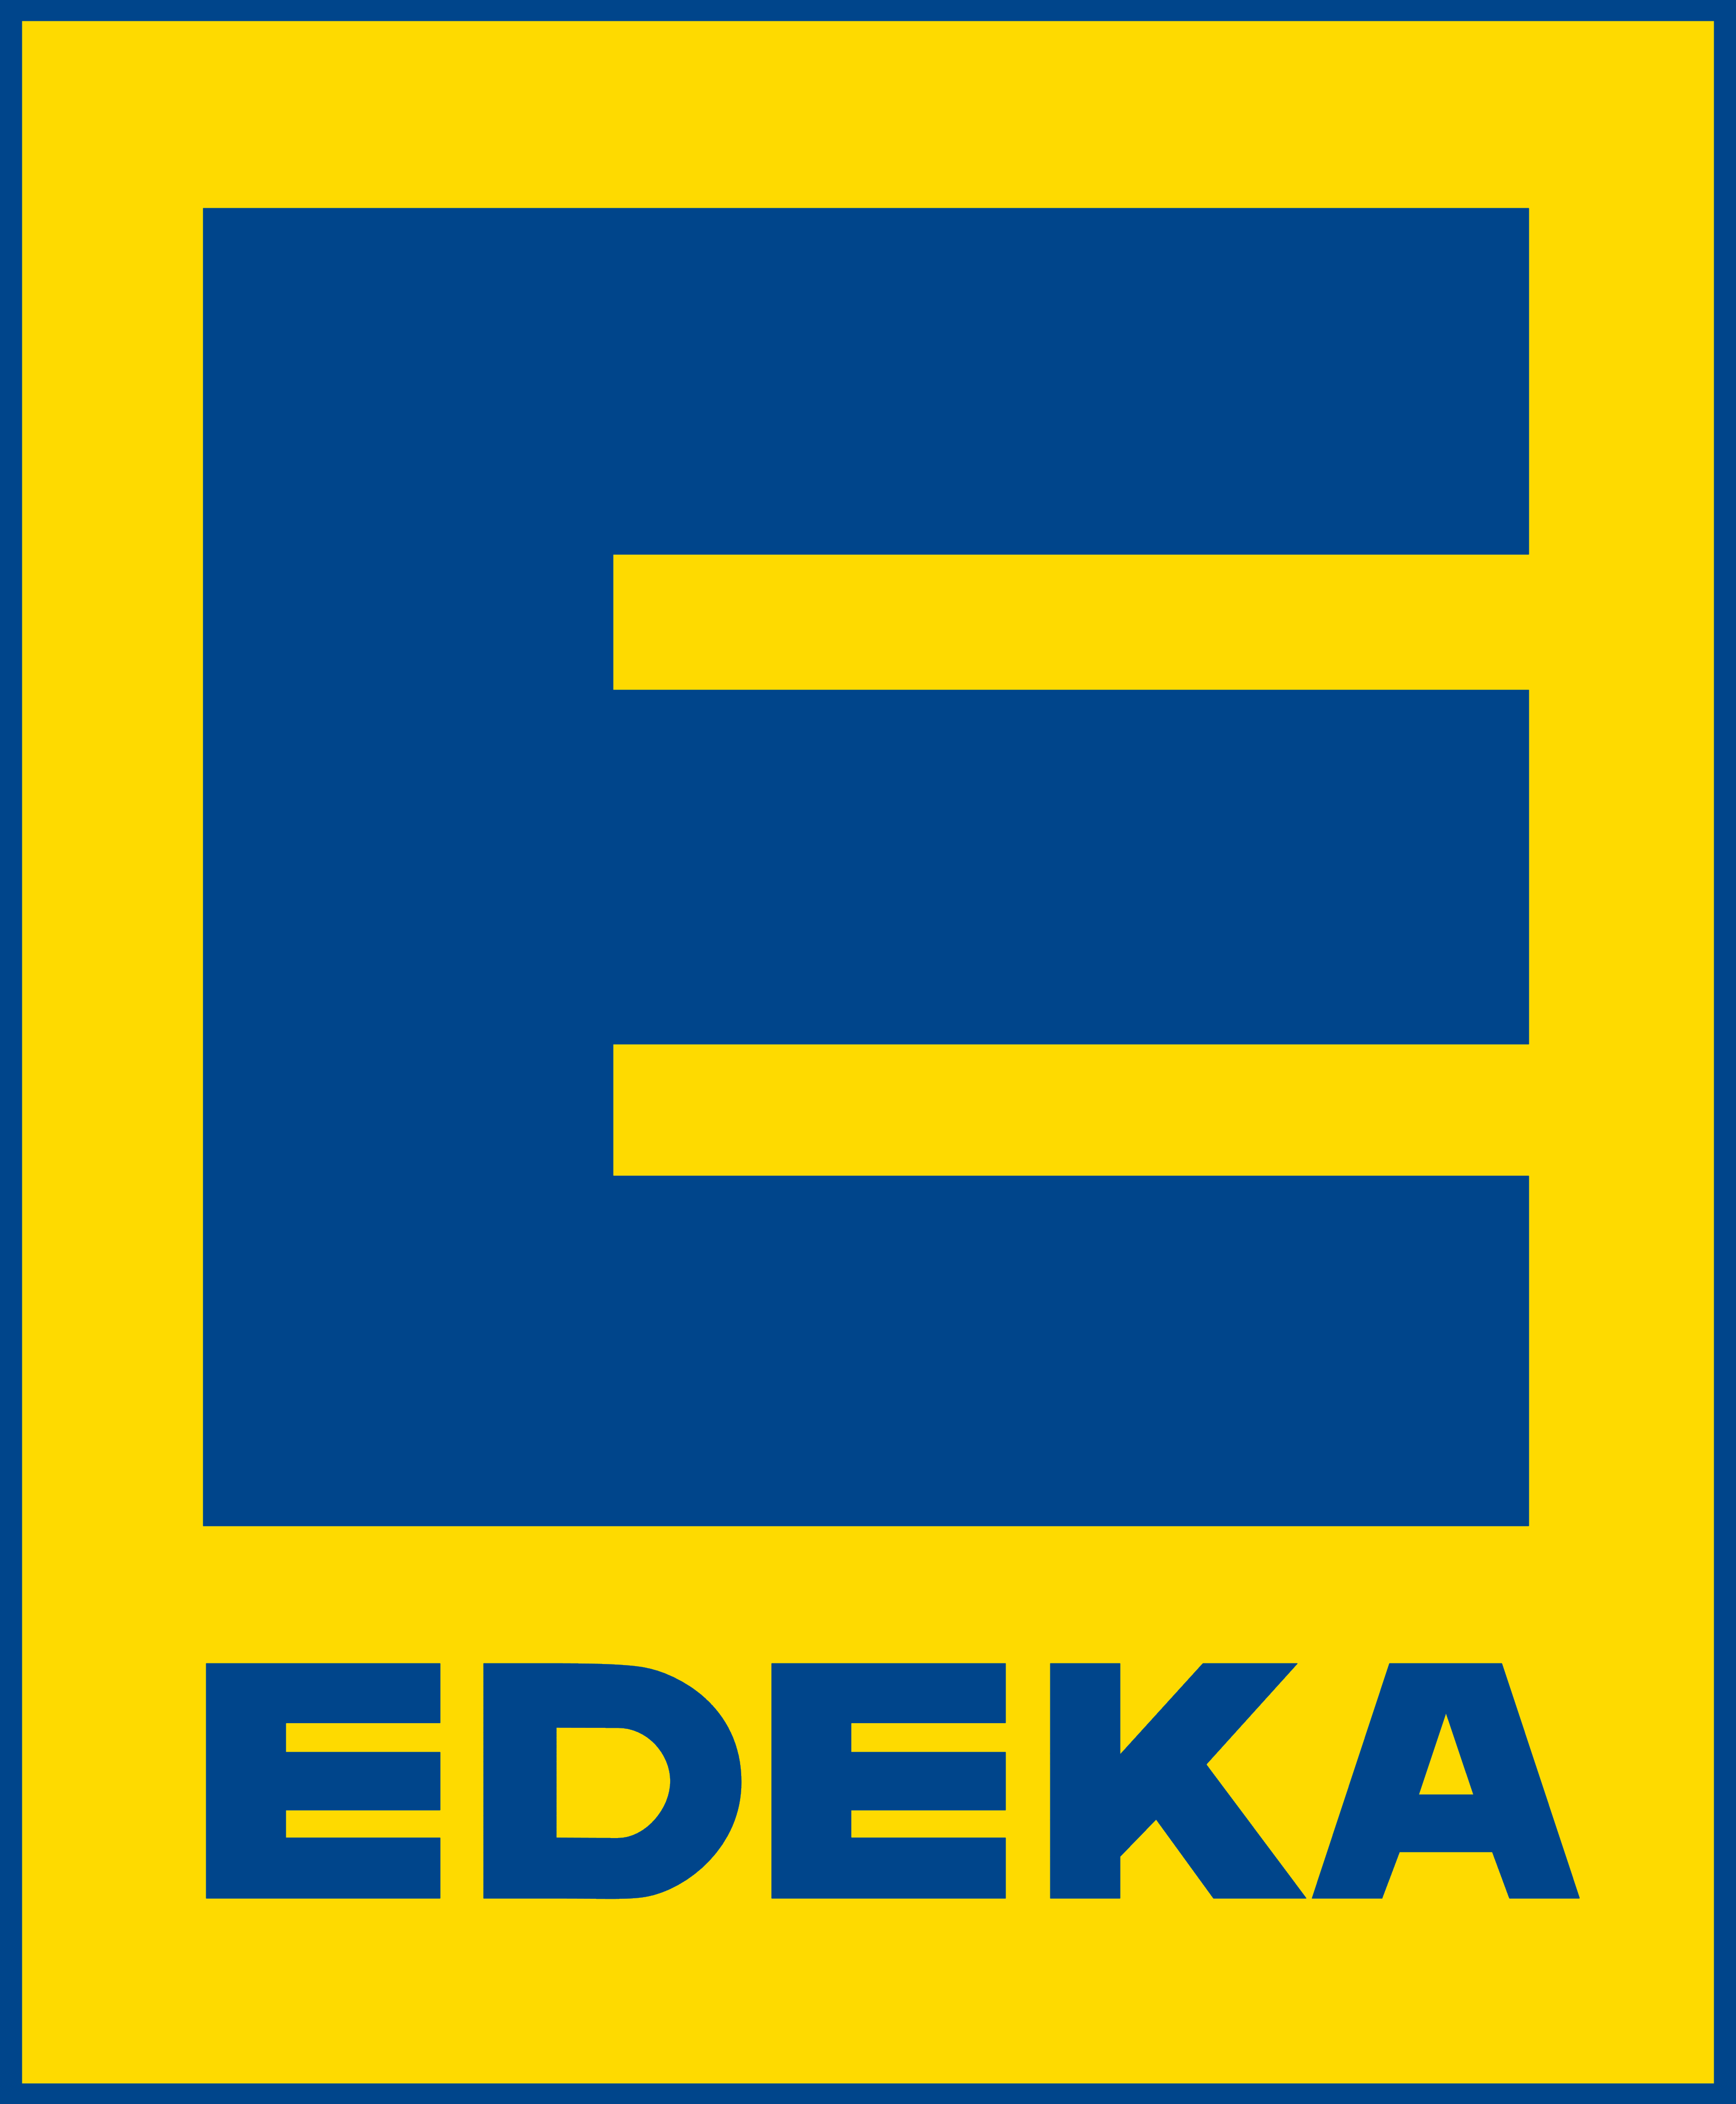 Edeka logo, logotype